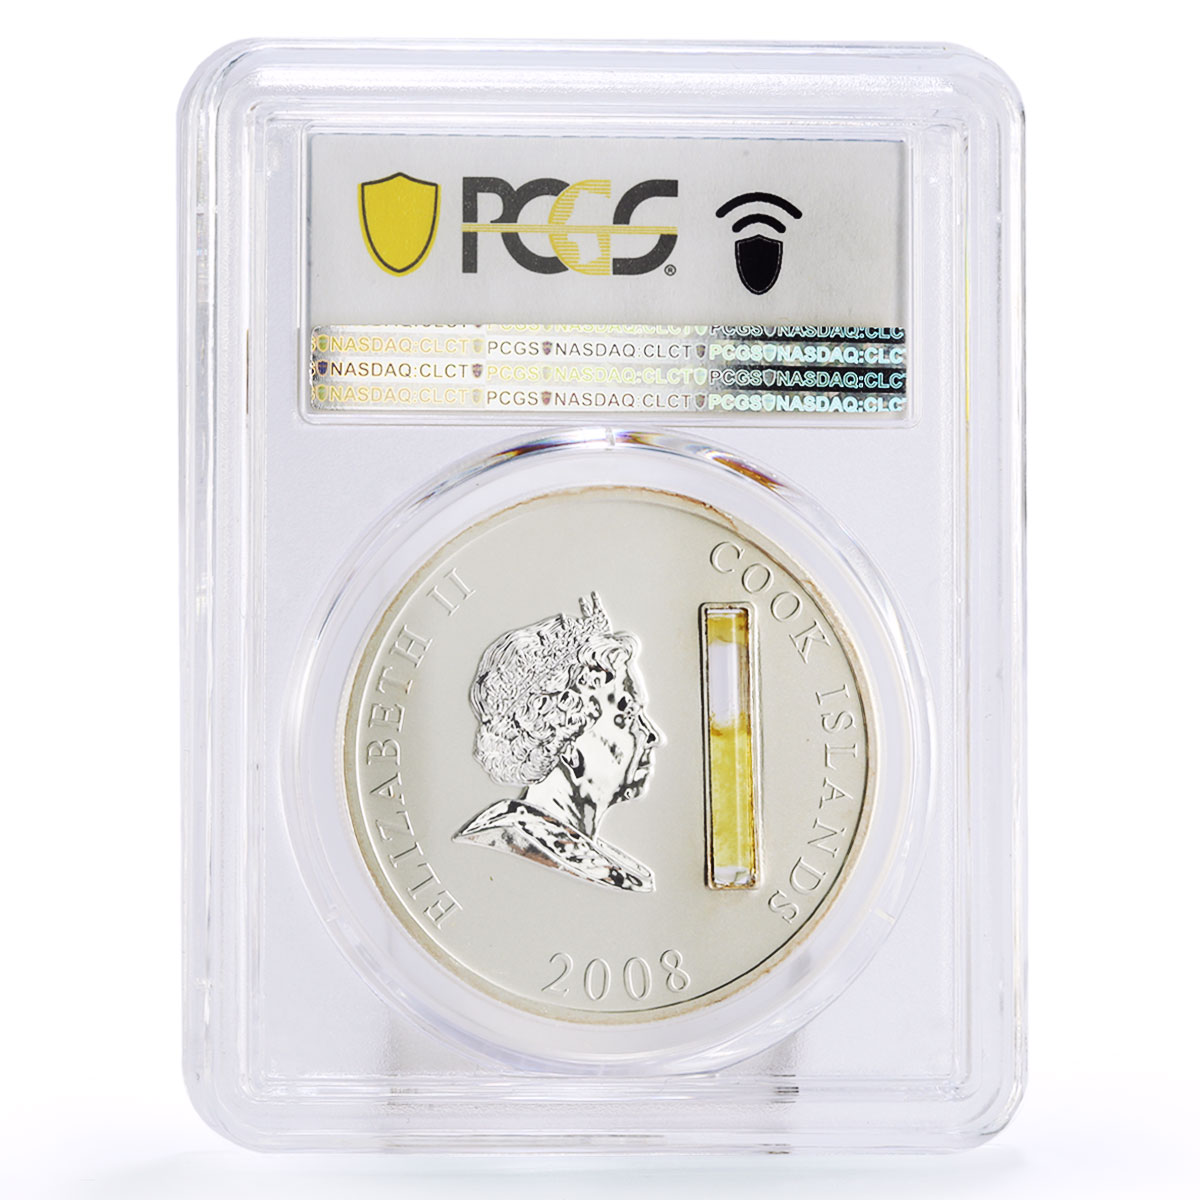 Cook Island 10 $ John Rockefeller Financial Tycoons PR69 PCGS silver coin 2008